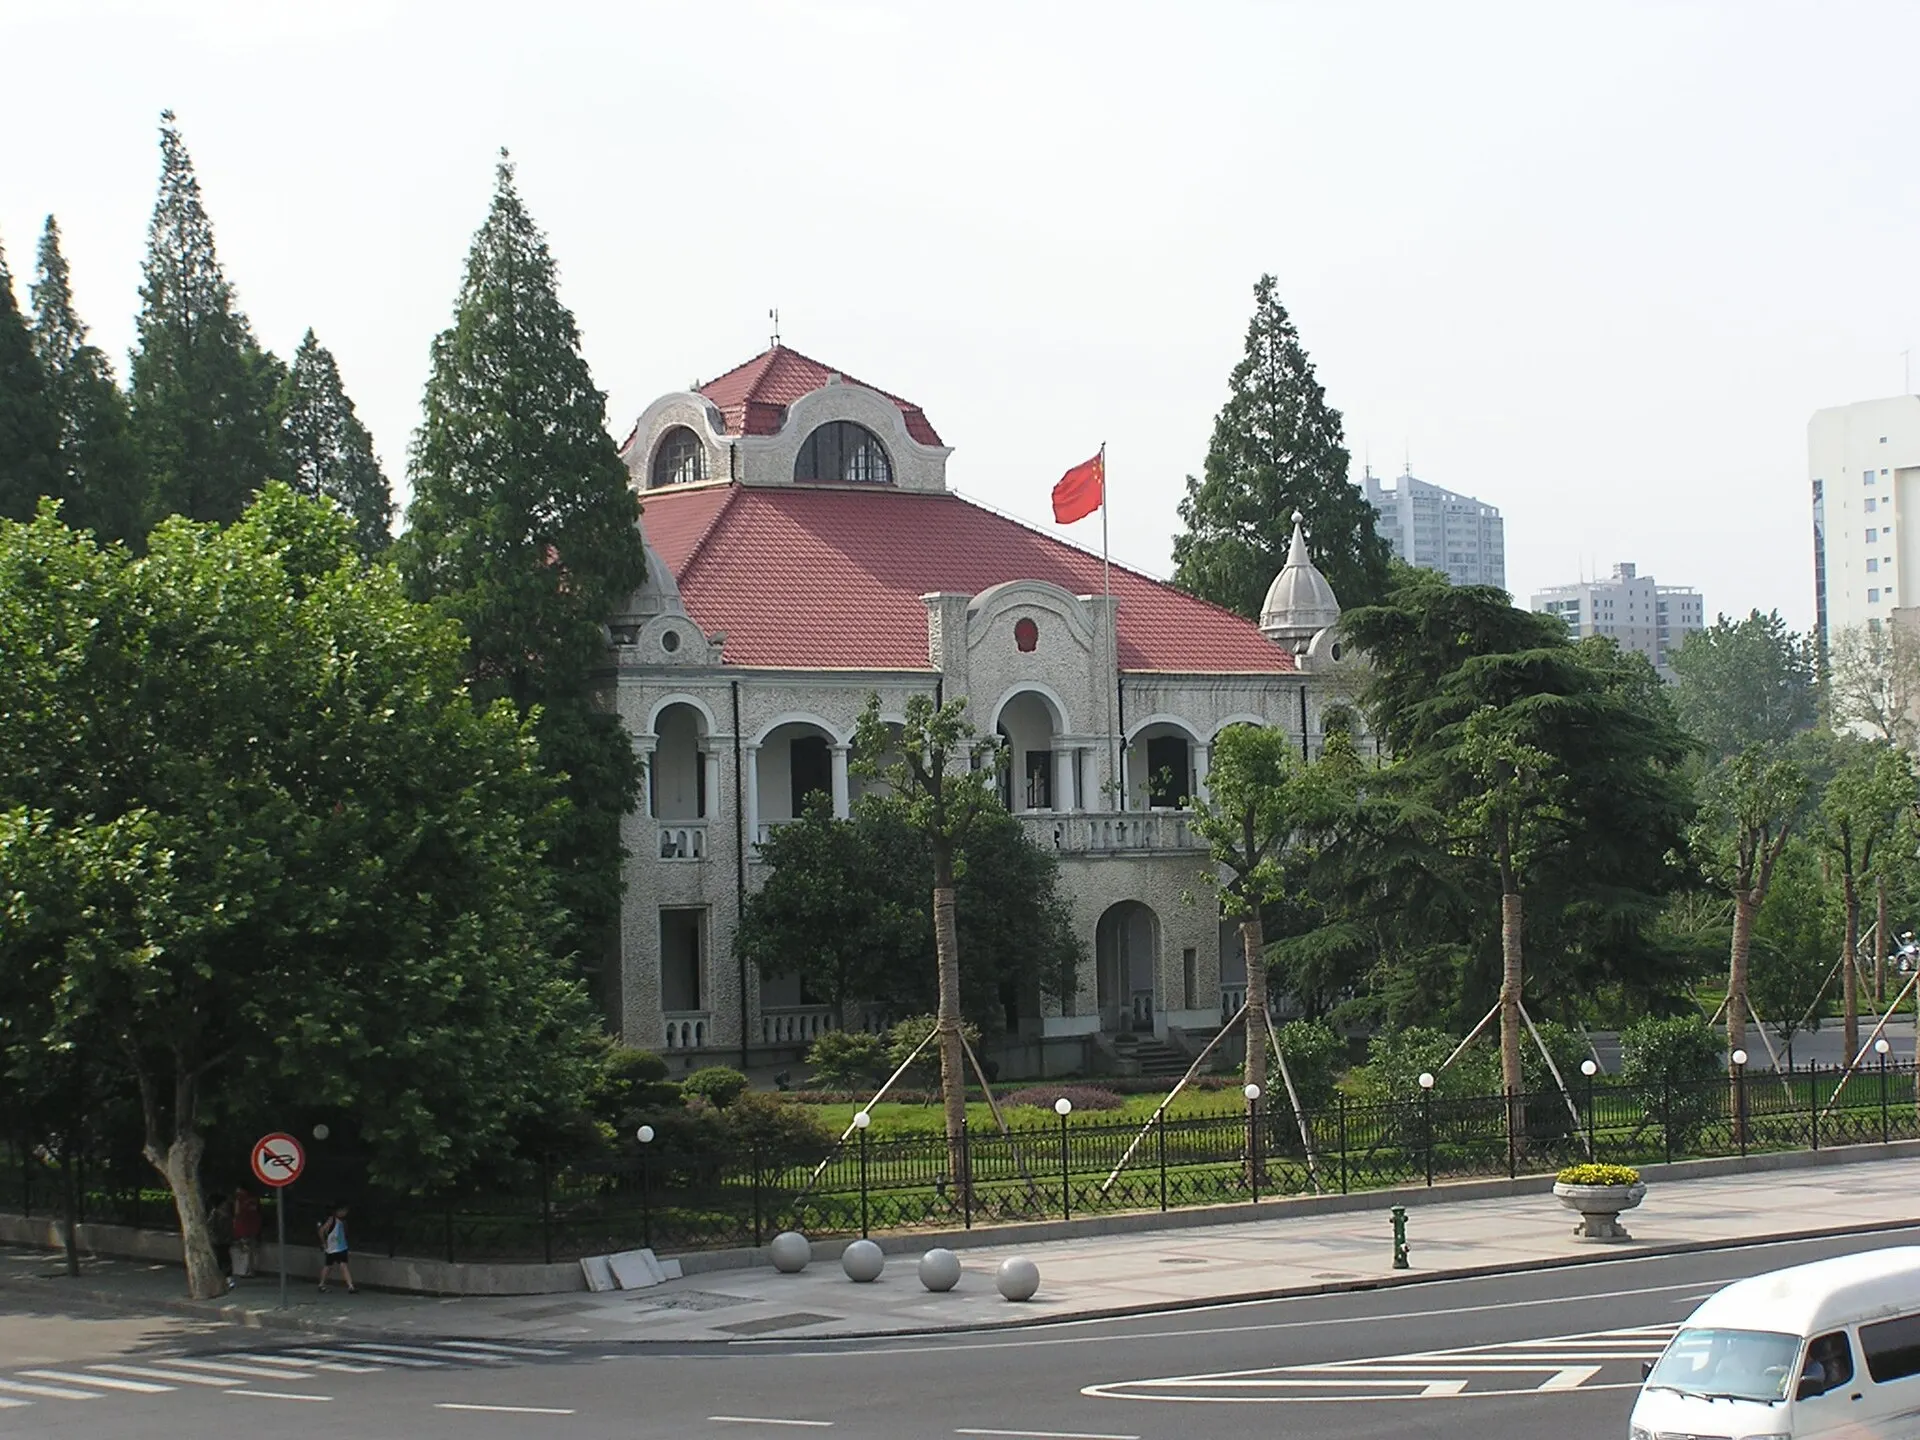 原德國駐武漢漢口領事館（建於 1895 年）